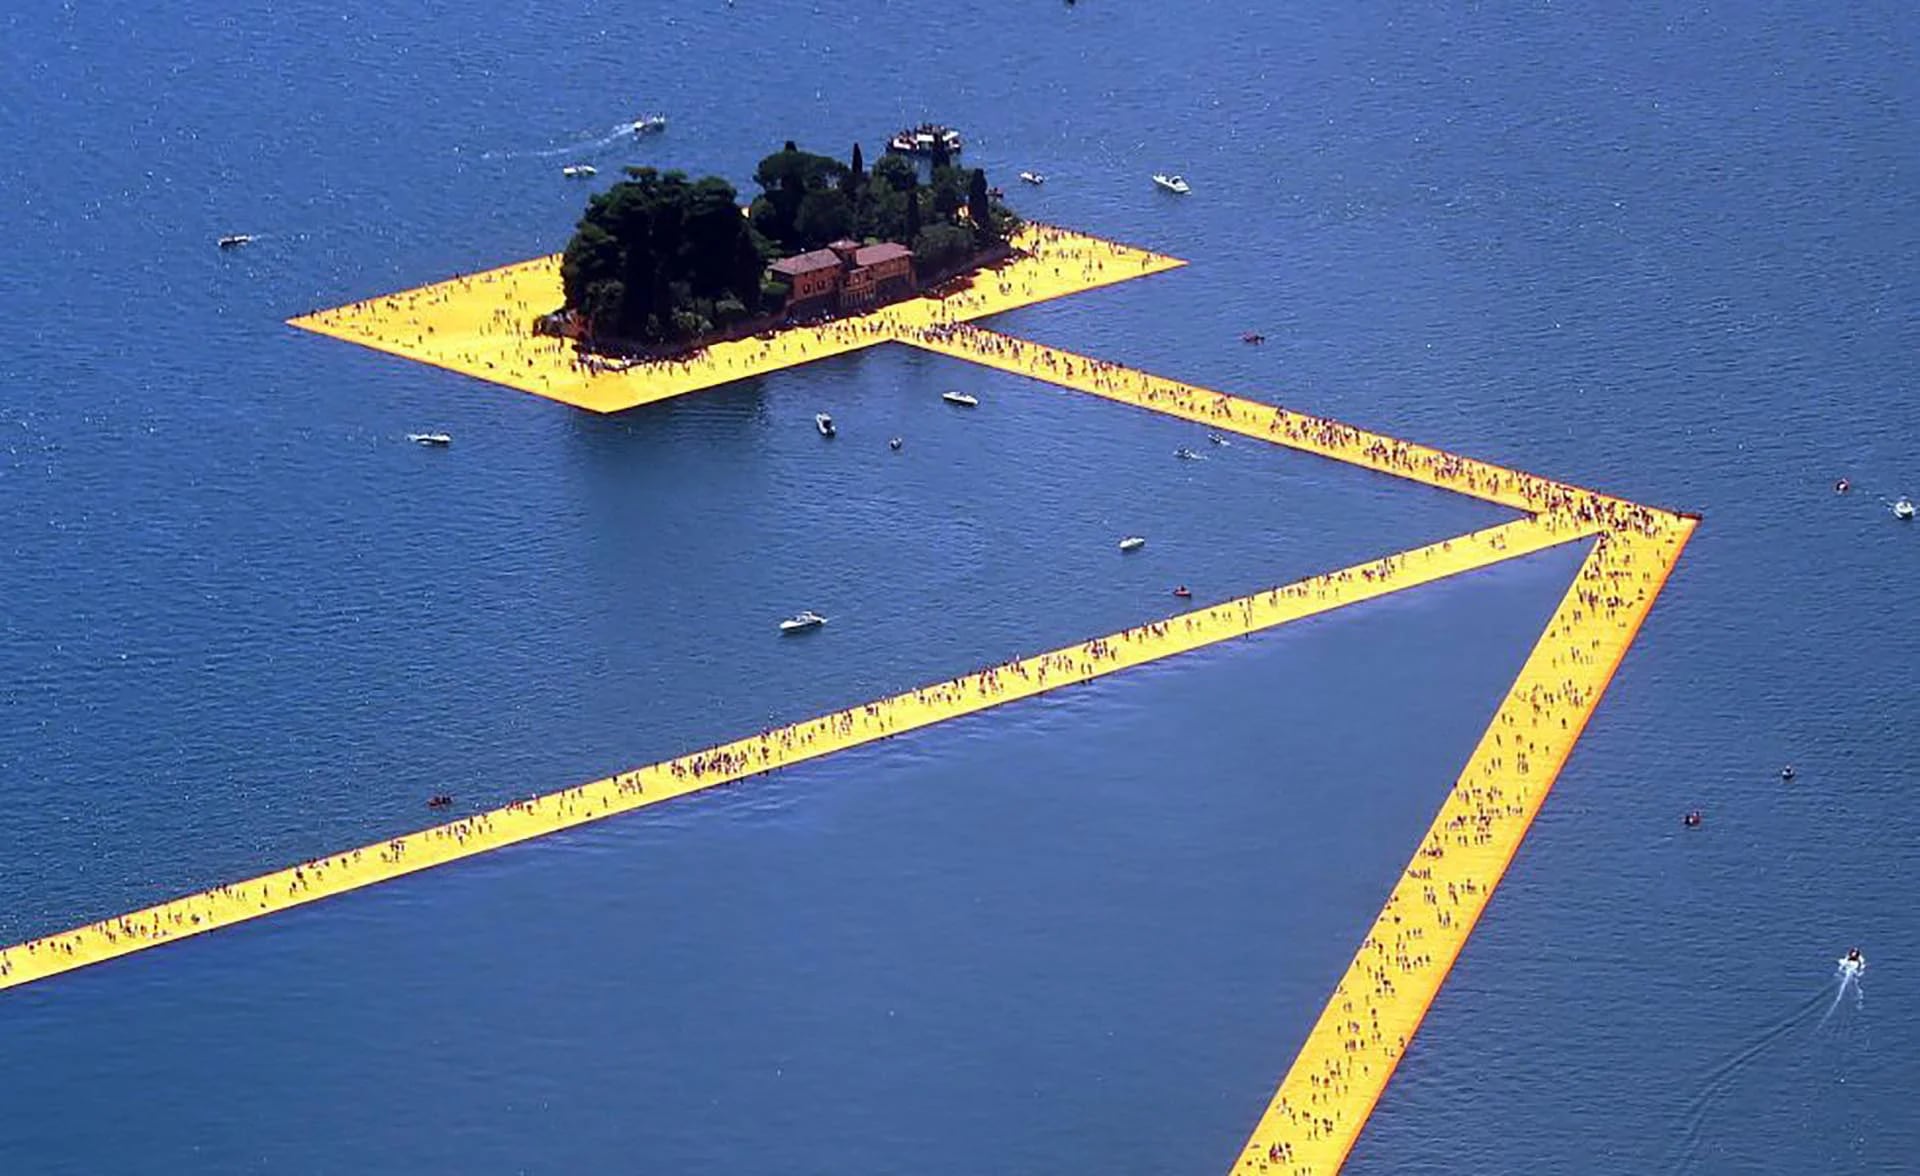 “Los muelles flotantes”, abiertos al público gratis, se han construido con 220.000 cubos flotantes de polietileno de alta densidad cubiertos por 100.000 metros cuadrados de tela amarilla